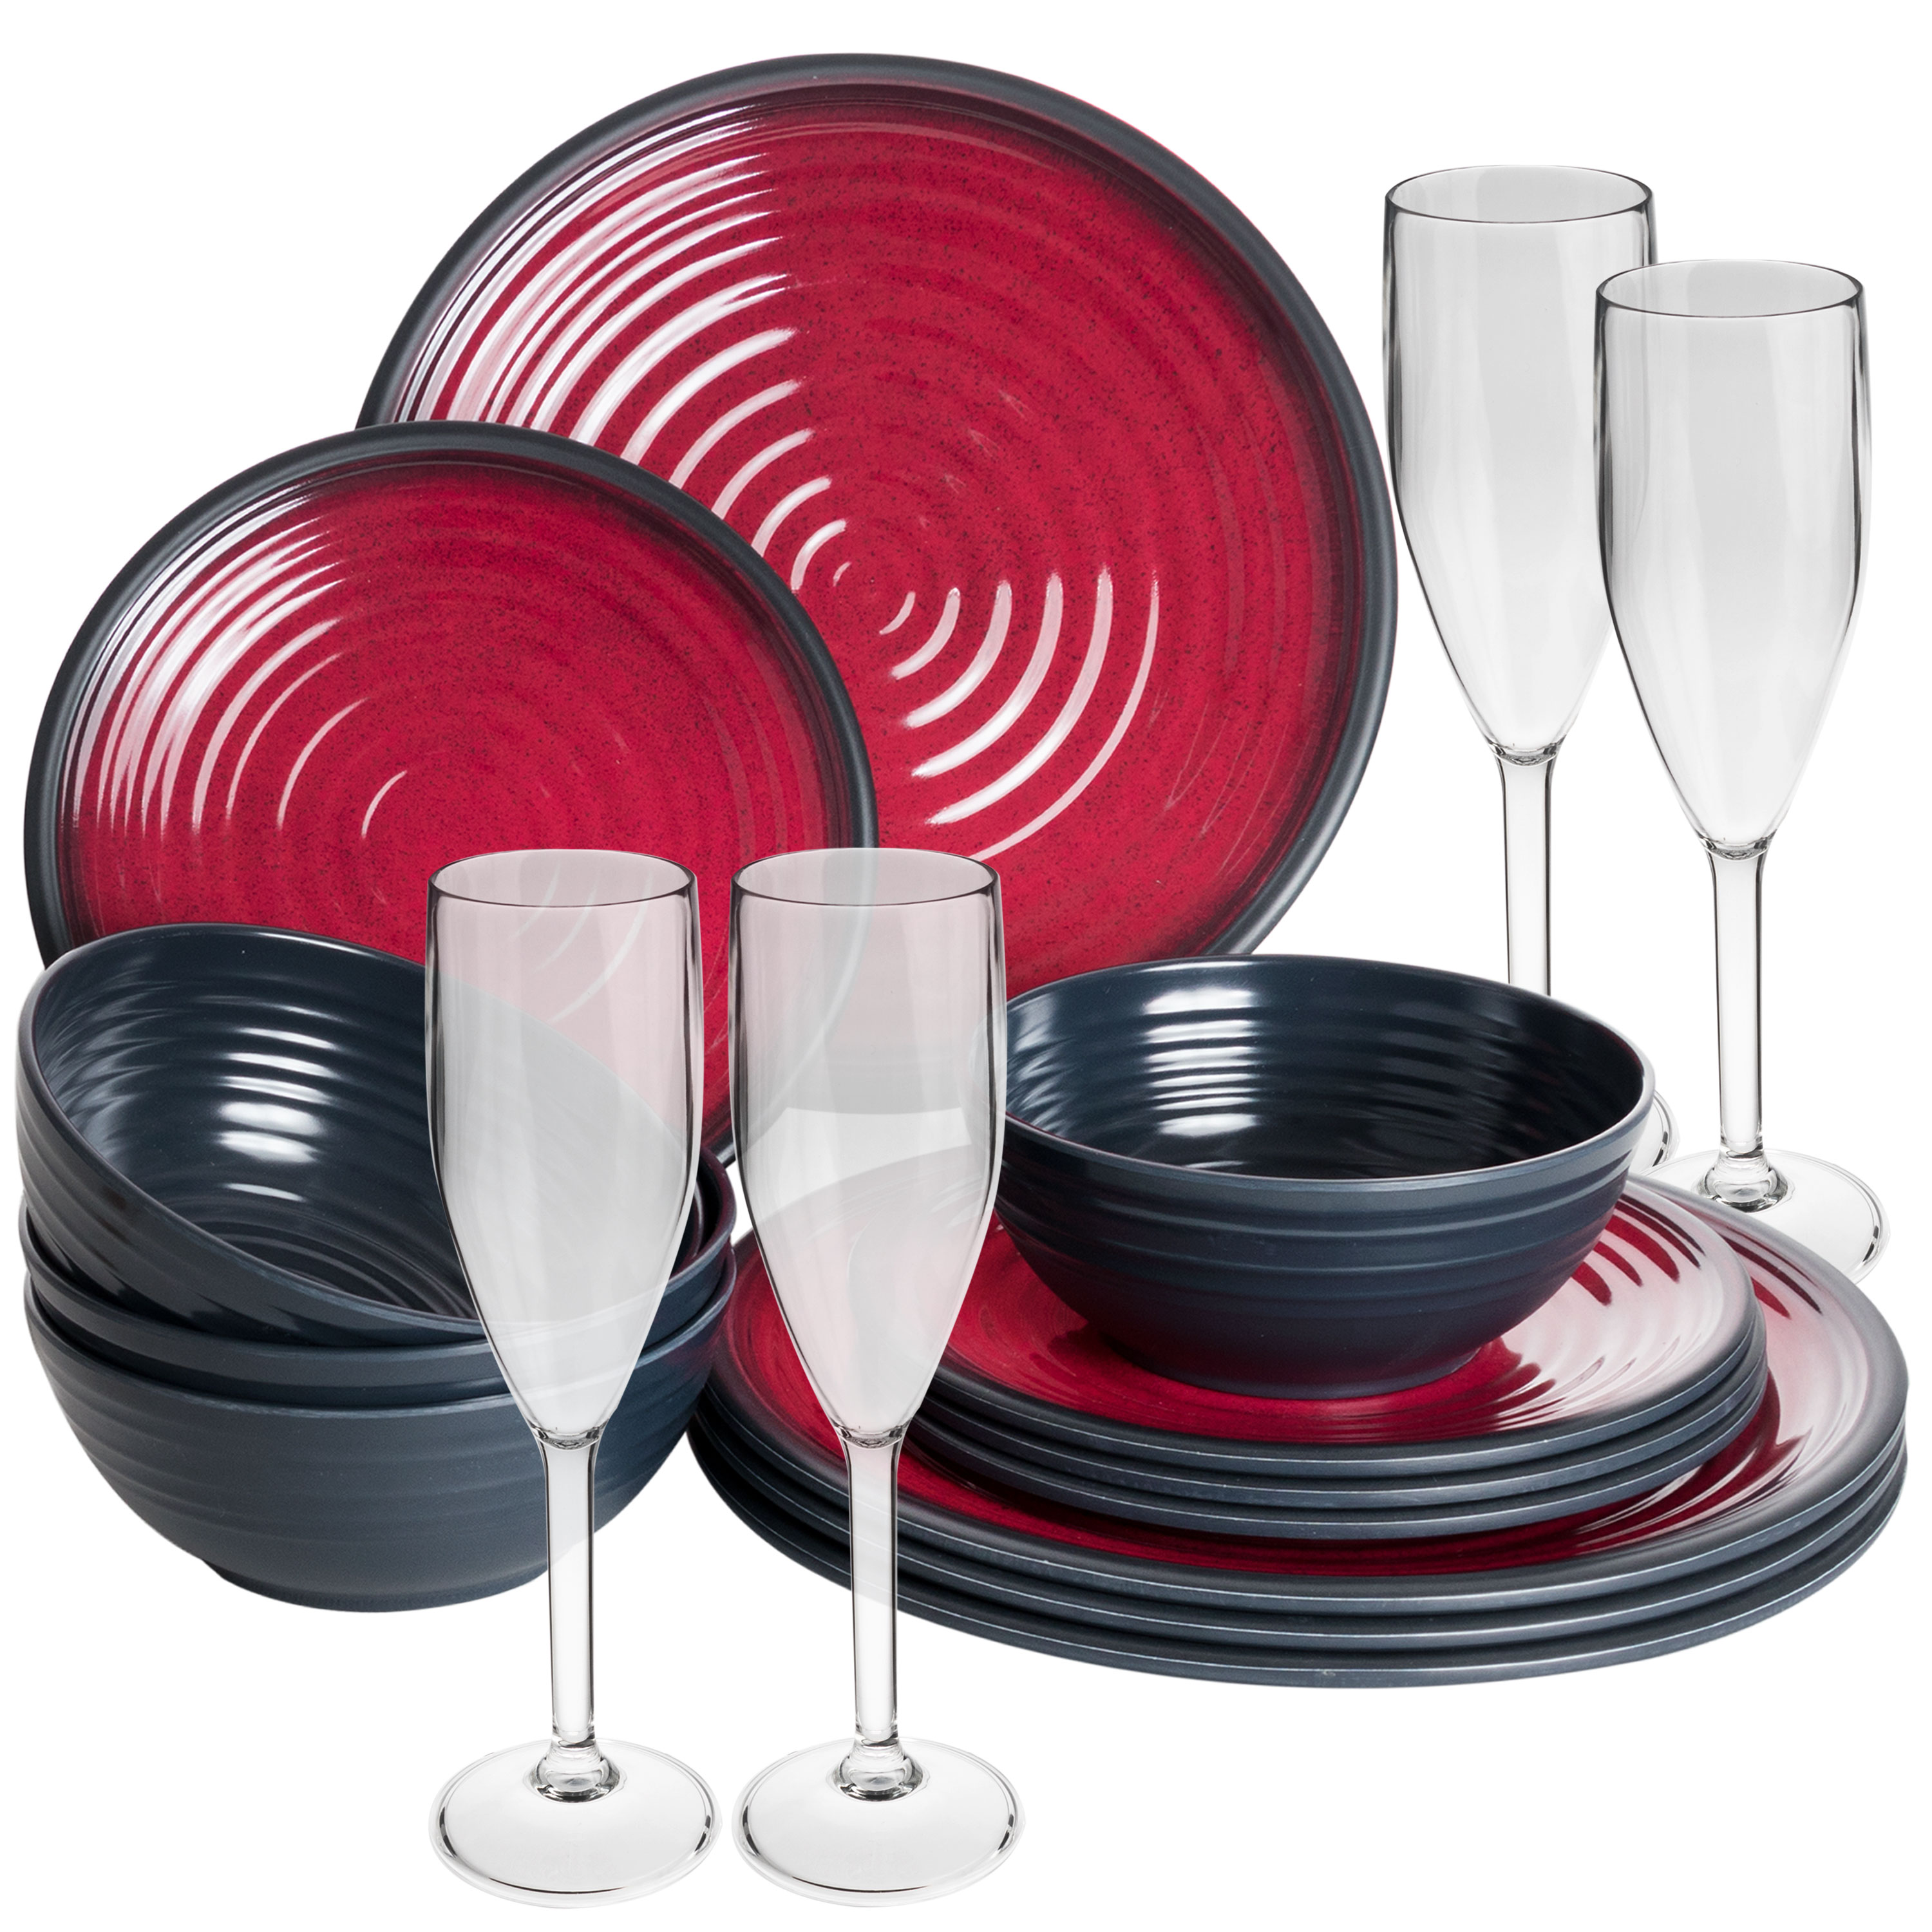 Melamin Camping eBay Gläsern Tassen Set schwarz mit Essgeschirr rot | Geschirr oder